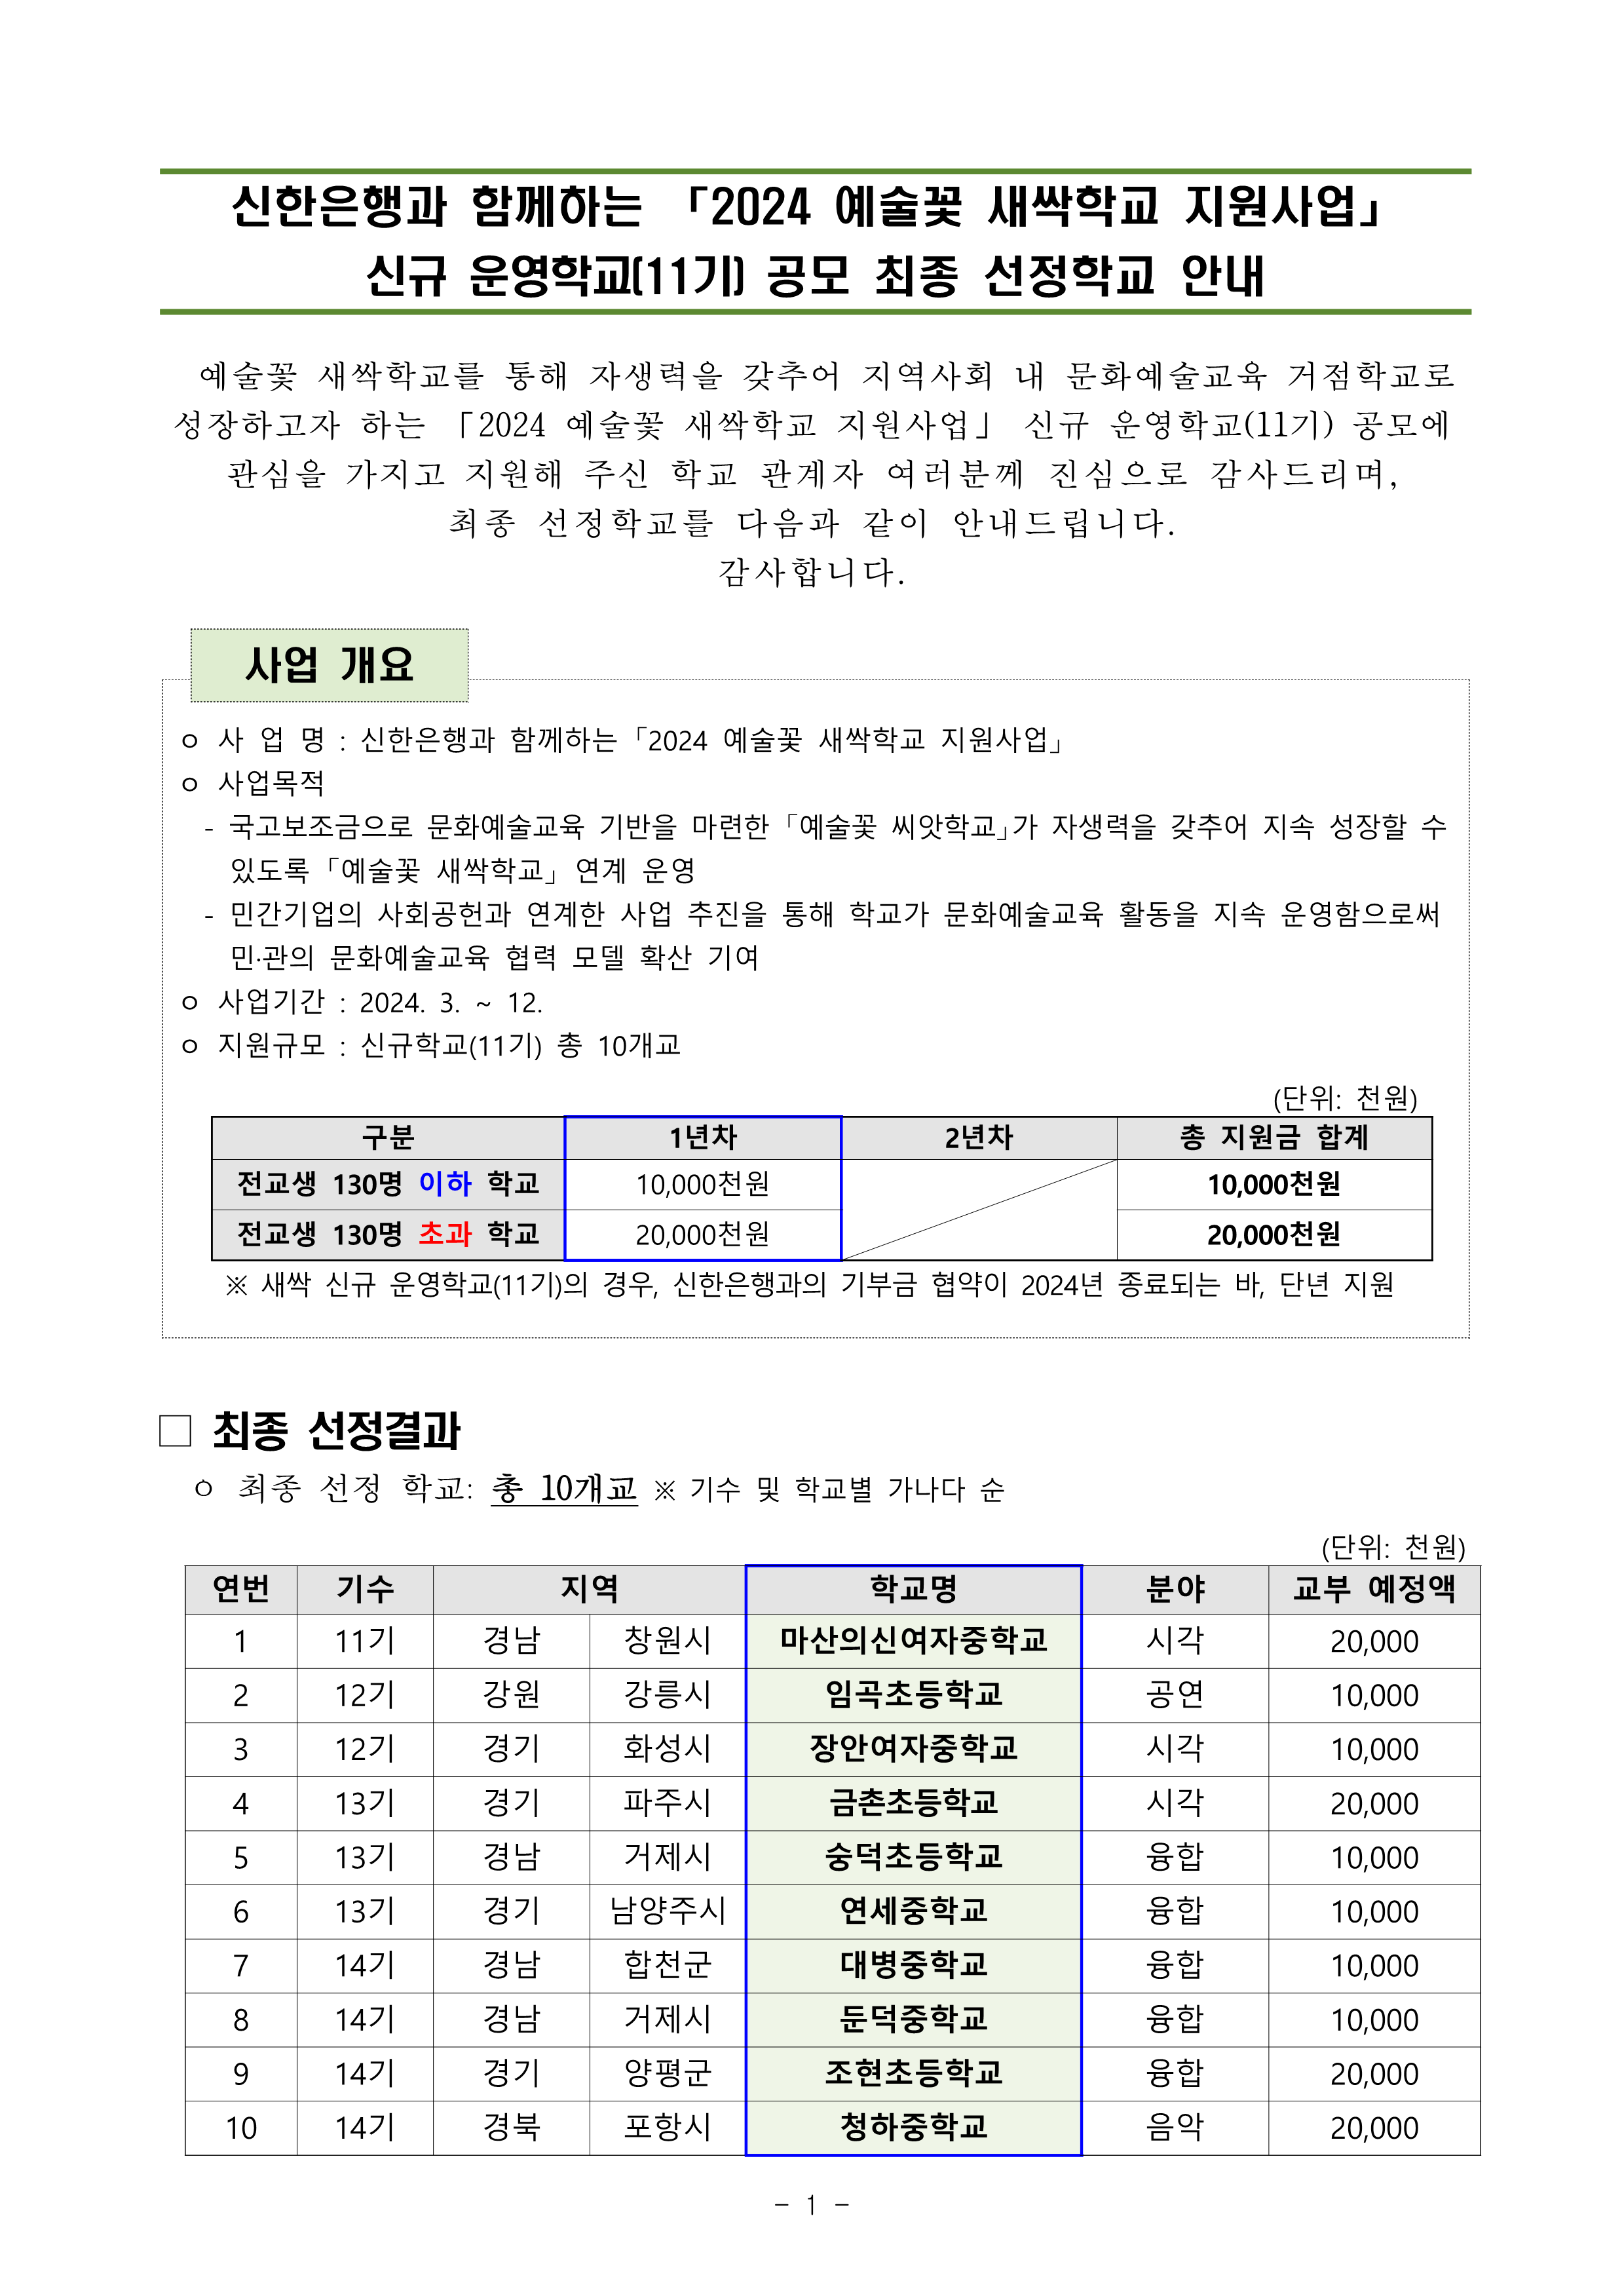 [붙임1] 2024 예술꽃 새싹학교 신규 운영학교(11기) 선정결과 안내_1.png